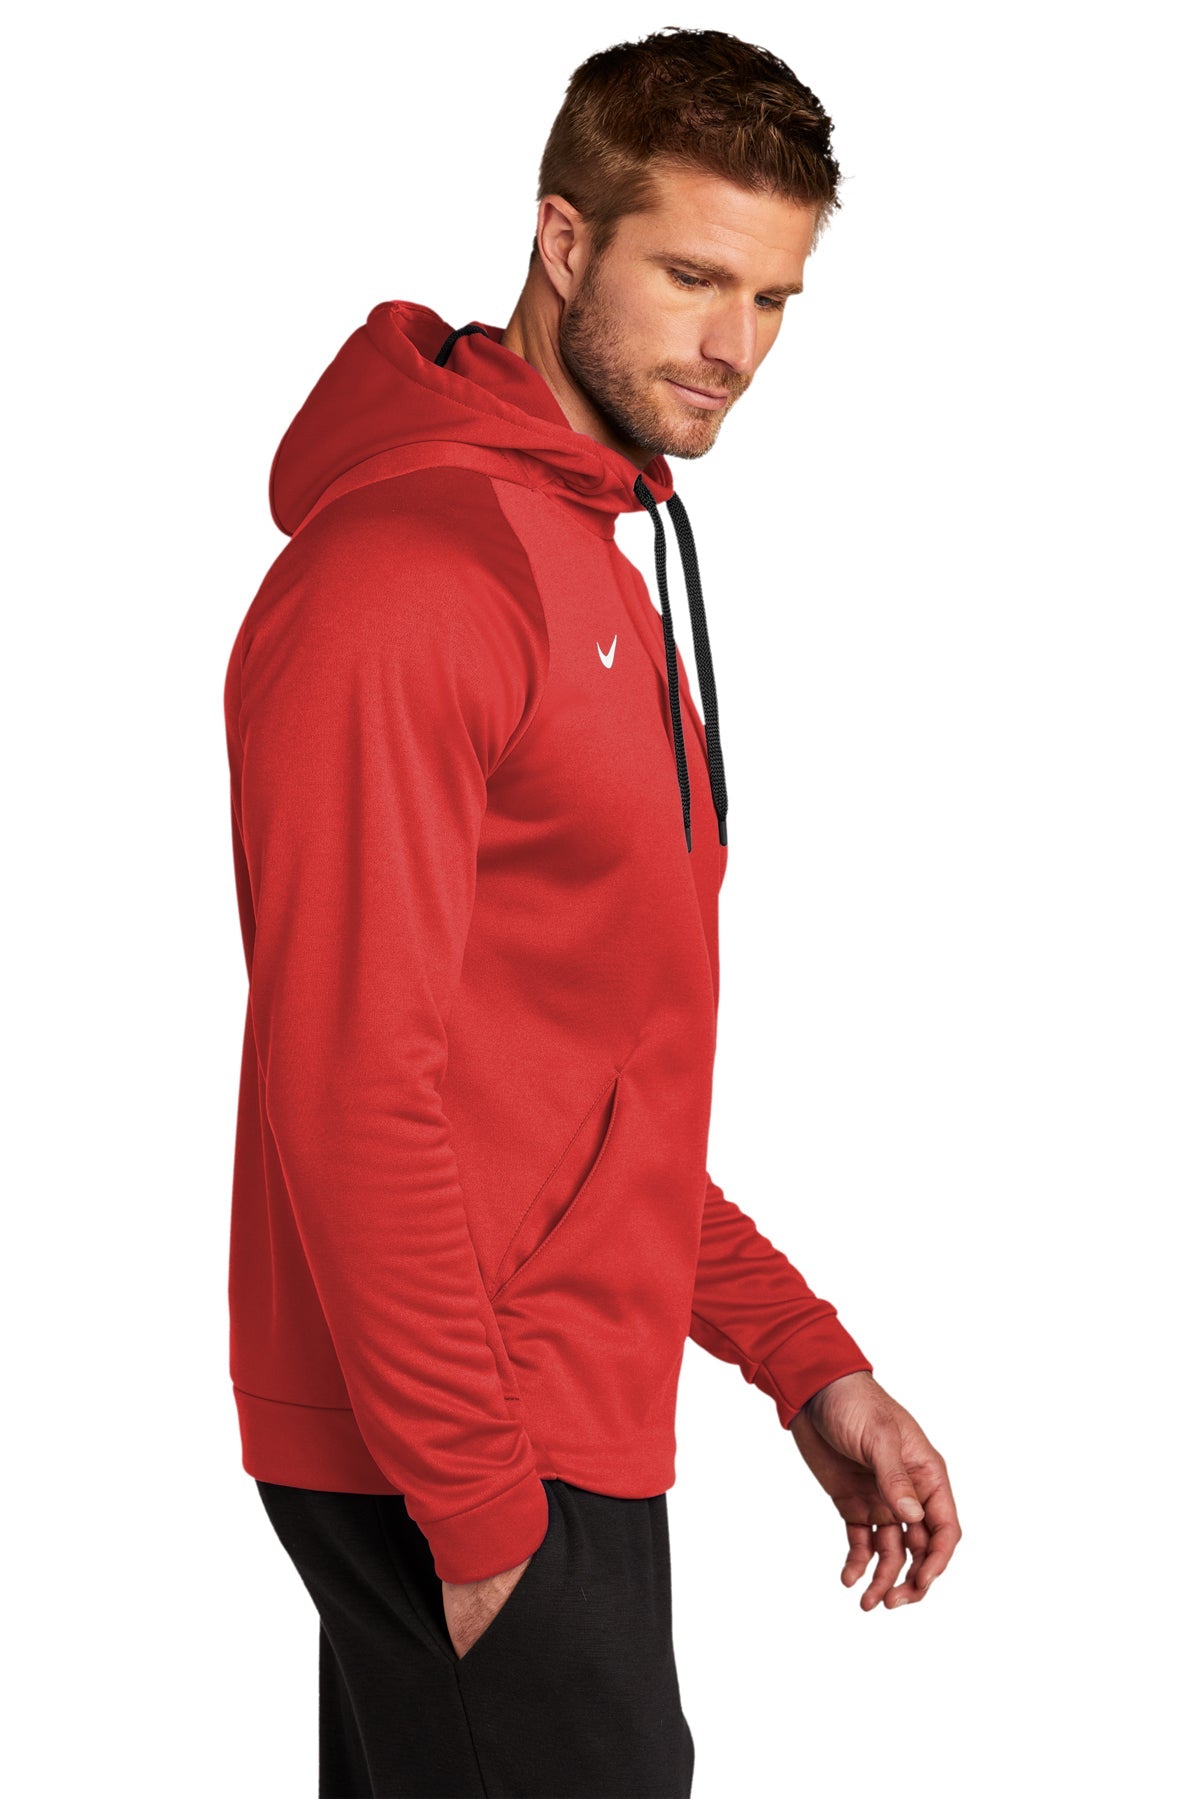 Nike Therma-FIT Fleece Custom Hoodies, Team Scarlet